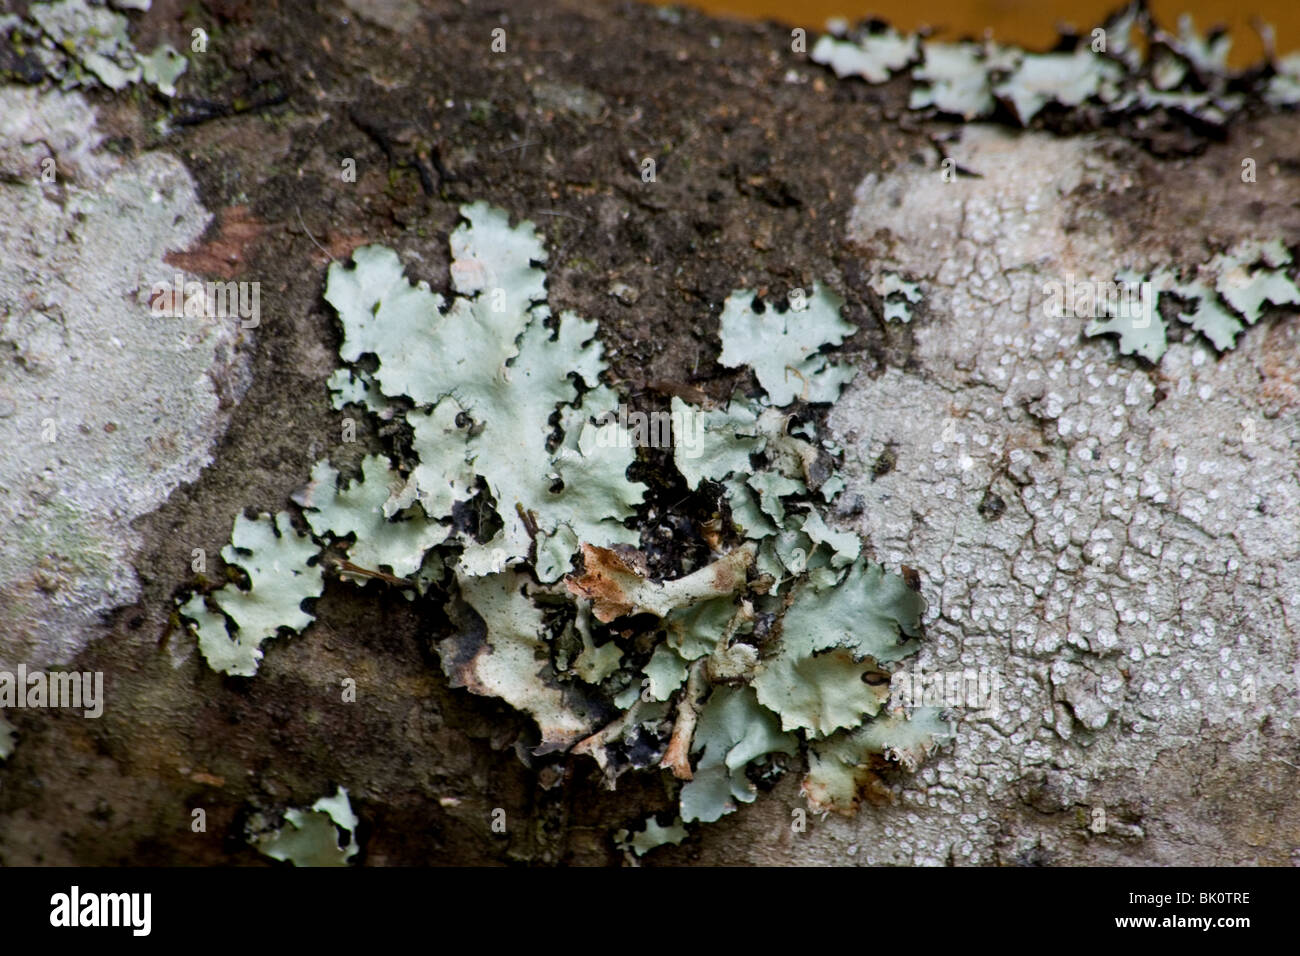 Foliose lichens on dead tree Stock Photo